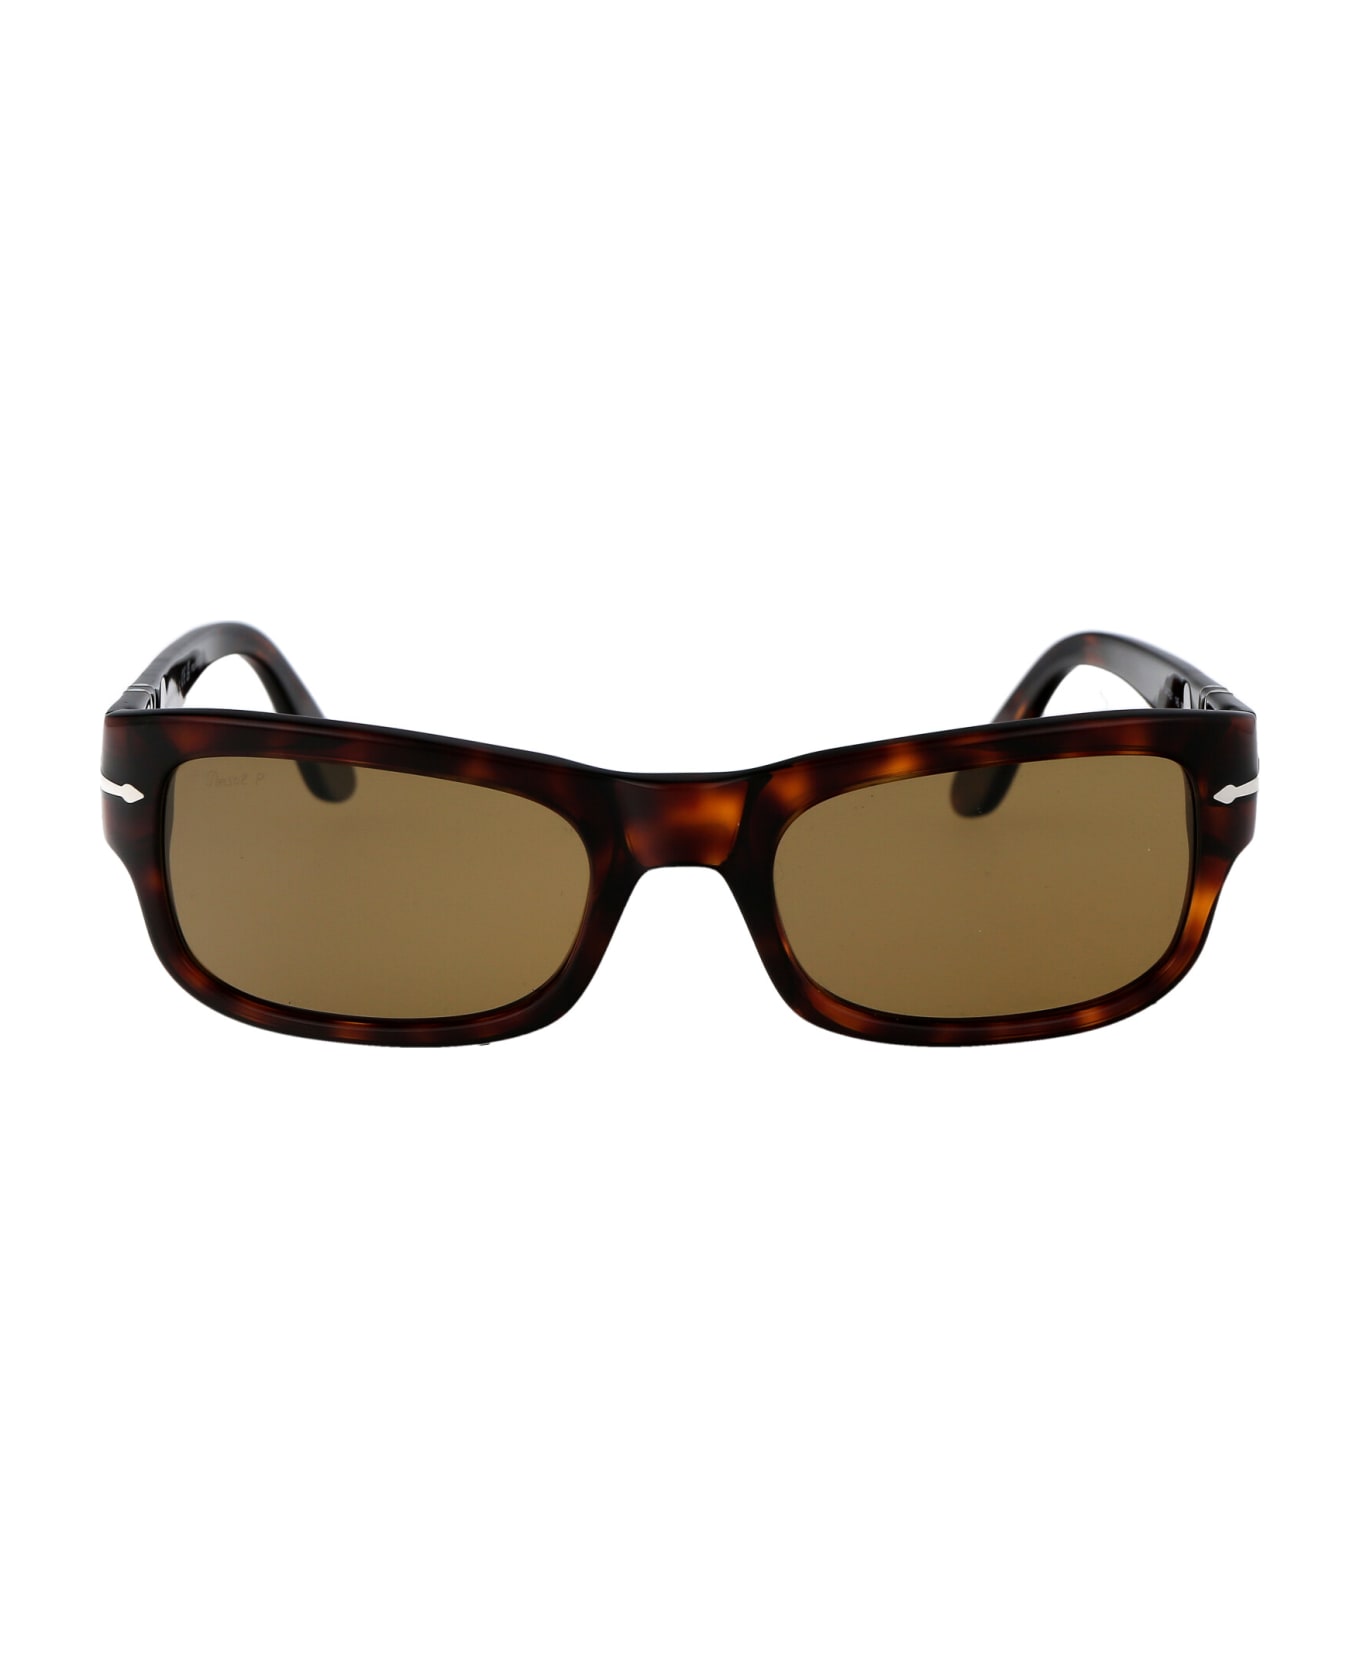 Persol 0po3326s Sunglasses - 24/57 HAVANA